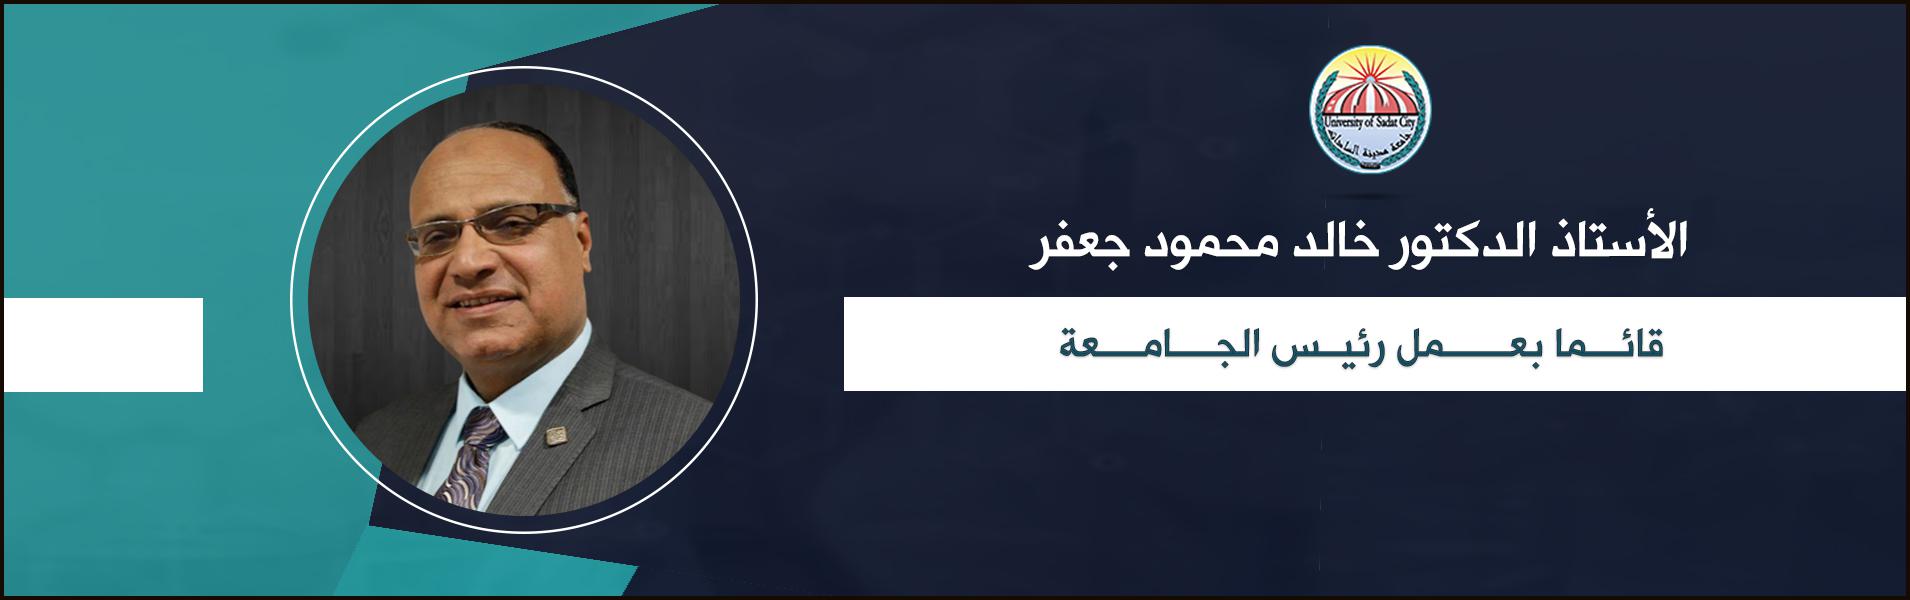 تعيين الدكتور خالد جعفر قائما بعمل رئيس جامعة مدينة السادات